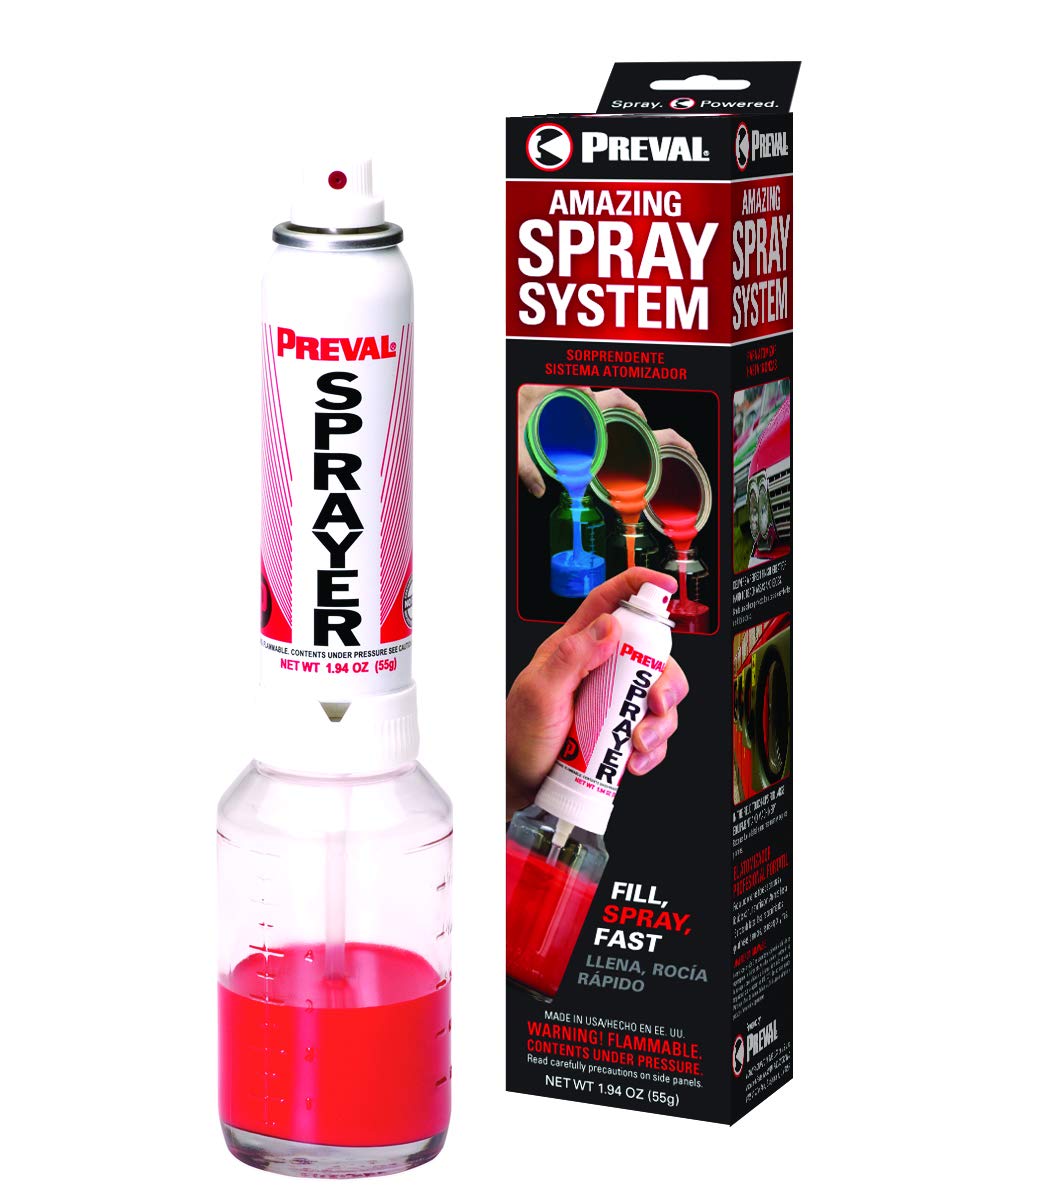 Preval Sprayer Complete Kit